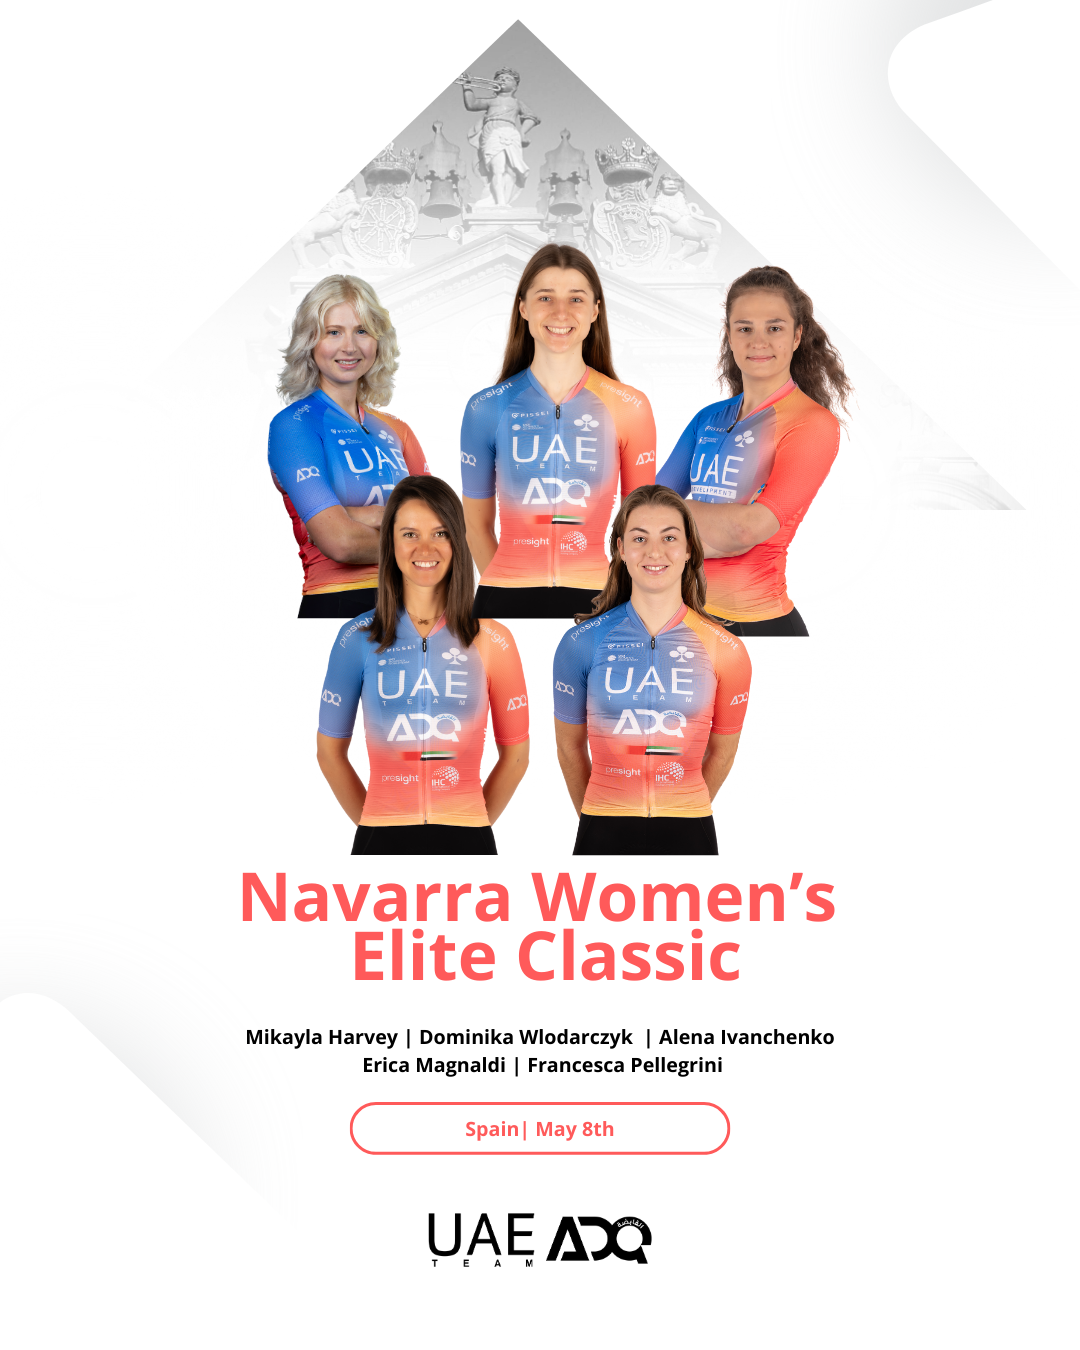 uae-team-adq-for-the-navarra-women-s-elite-classic